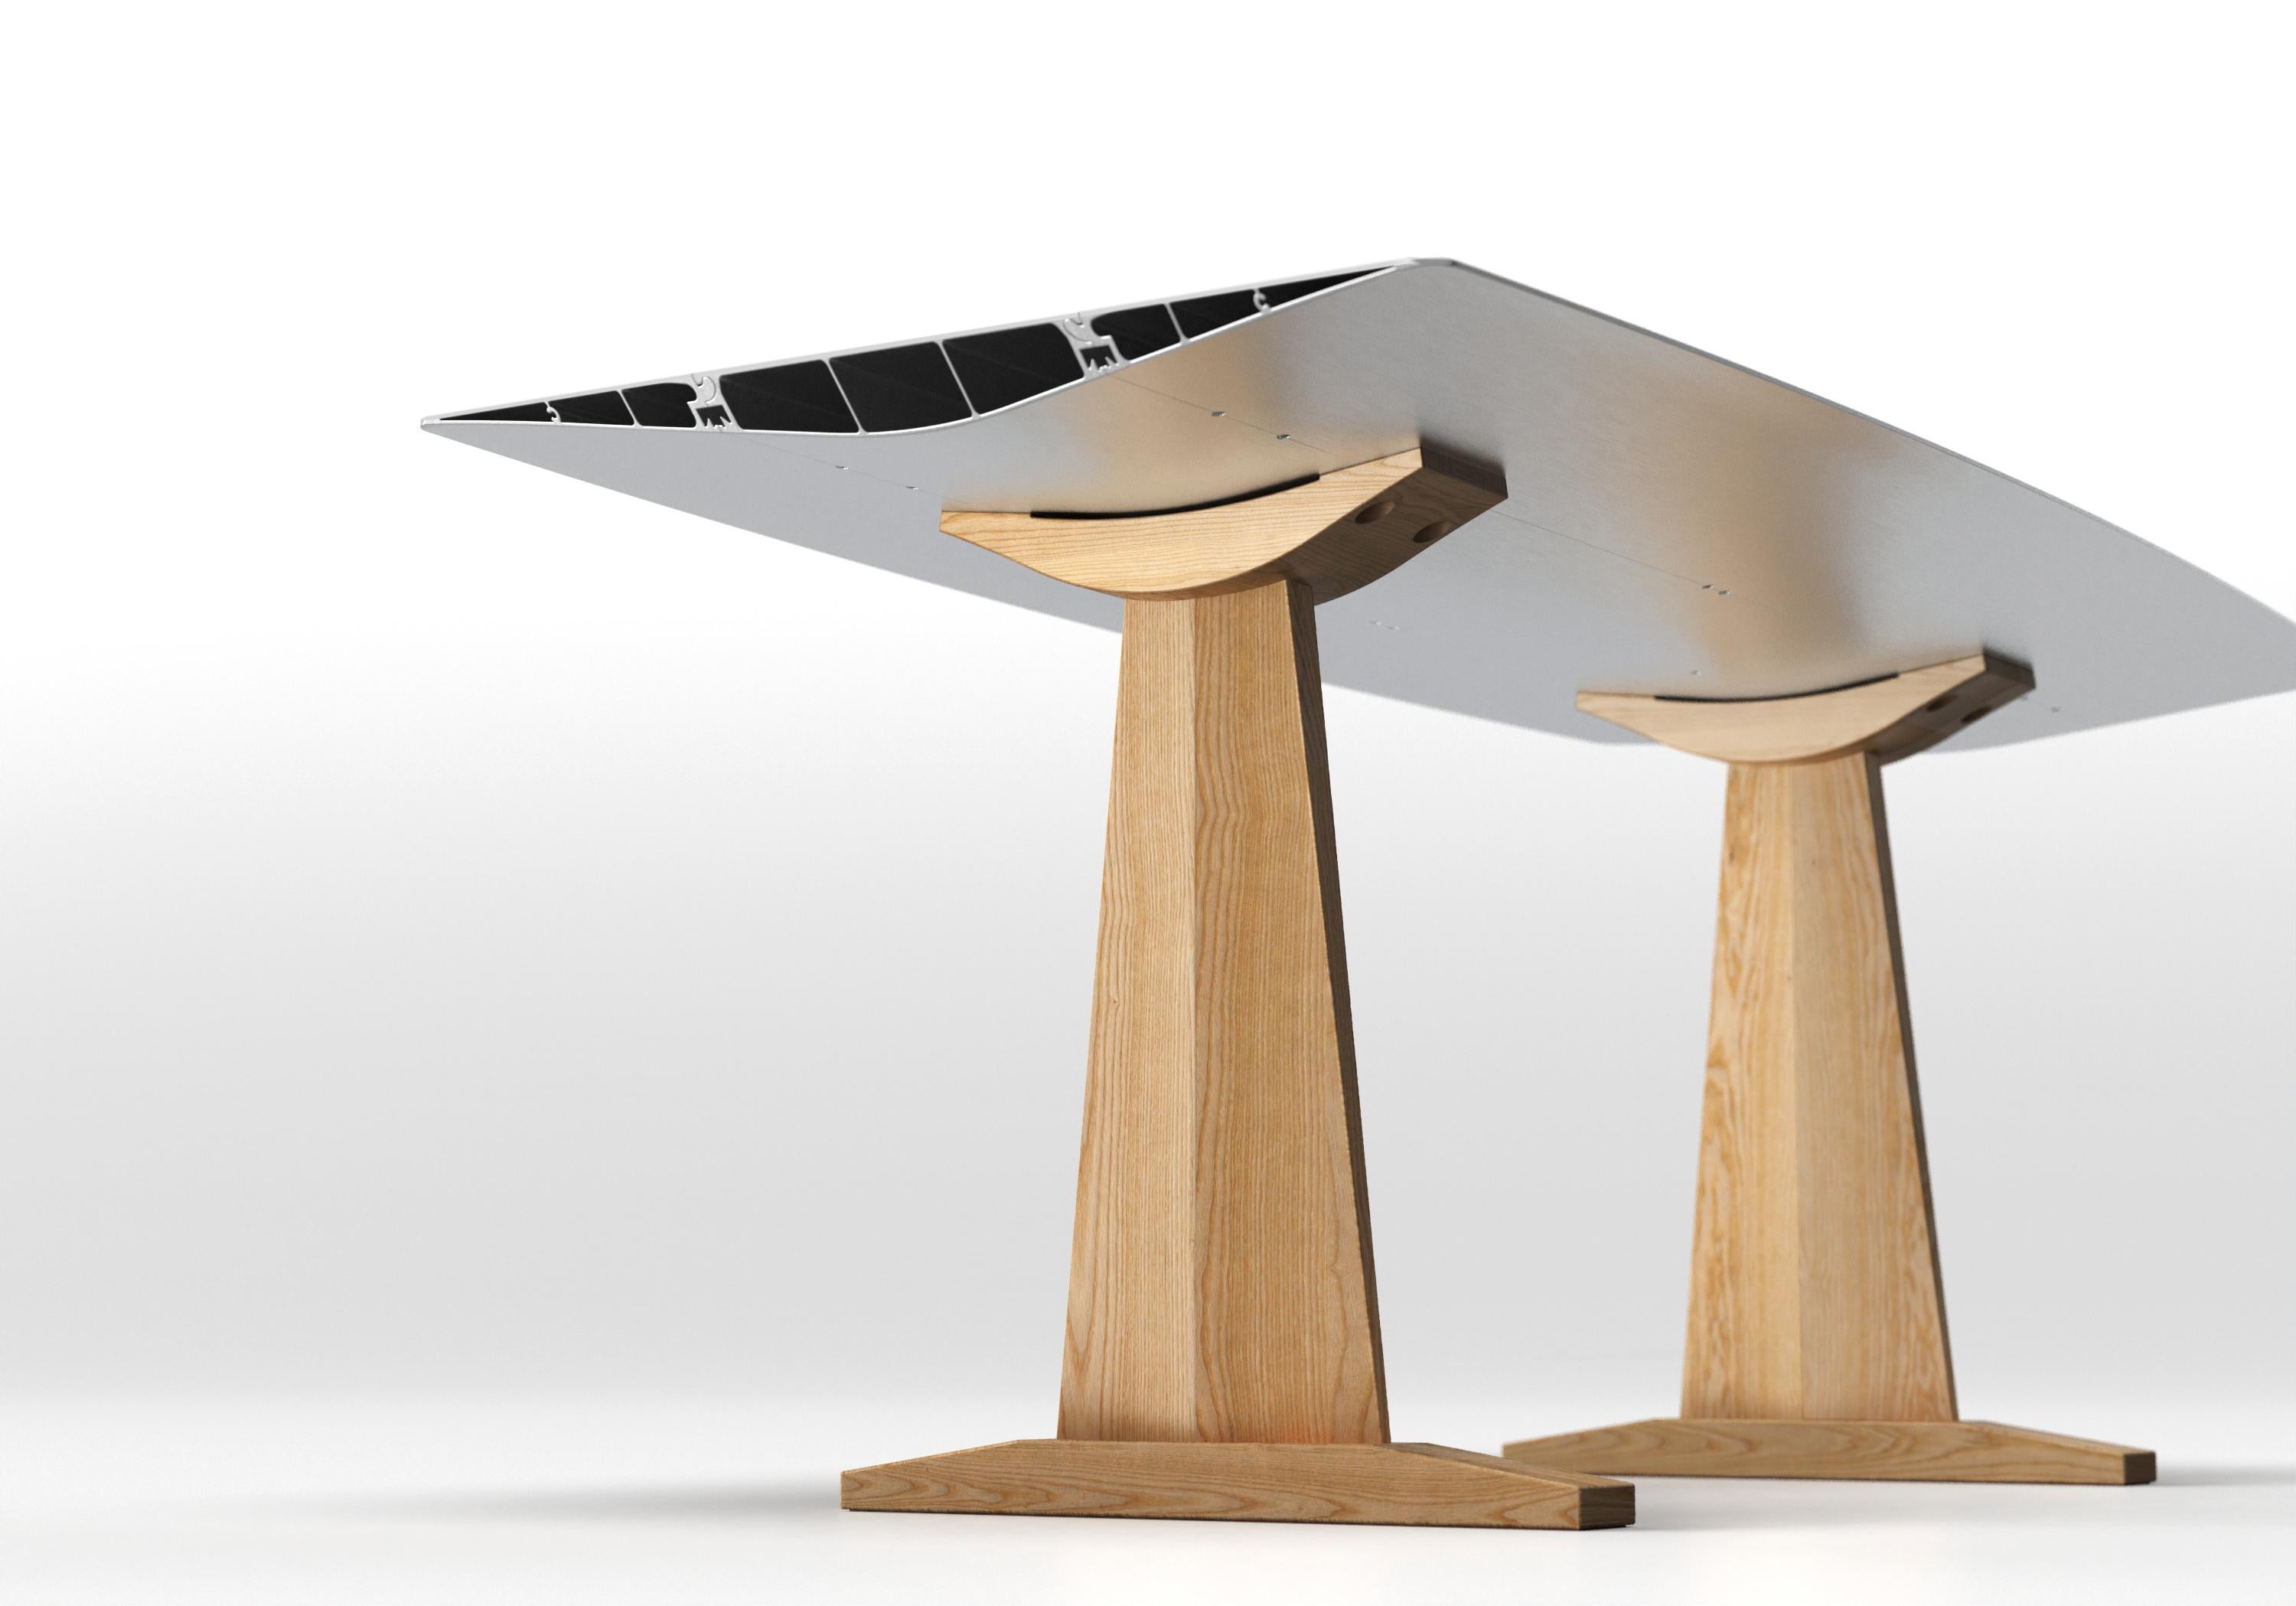 Der Tisch B, der 2009 die Extrusions Collection eröffnete, kann bis zu fünf Meter hoch sein und besteht aus einem einfachen Profil aus stranggepresstem Aluminium. Hinter seiner scheinbaren Einfachheit verbirgt sich eine komplexe technische